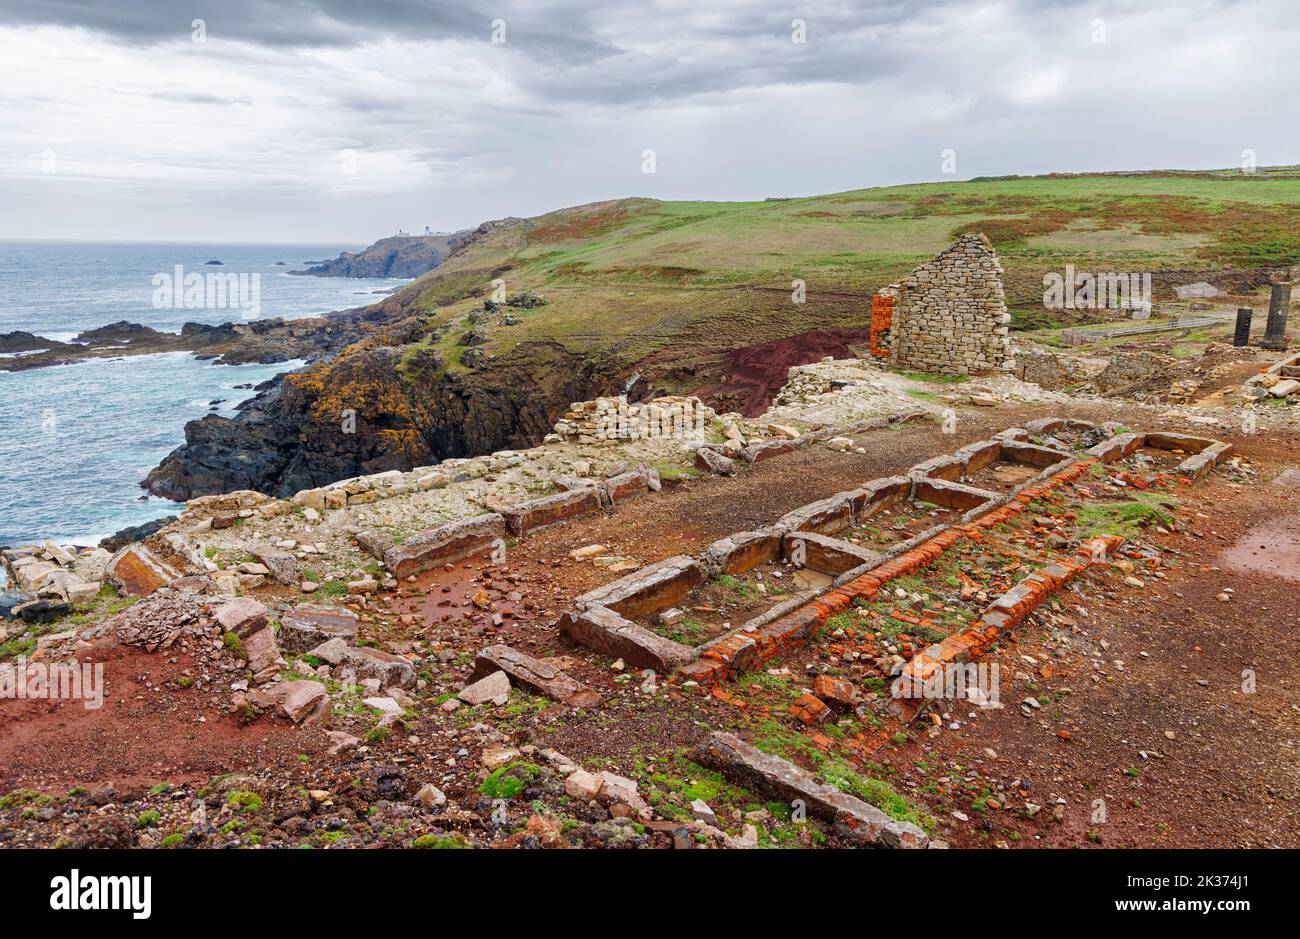 Ruines et fondations de falaise à la mine Levant par la mine Geevor sur la côte nord de Cornwall, qui fait partie du site du patrimoine mondial de l'exploitation minière de Cornouailles de la Tin Coast Banque D'Images